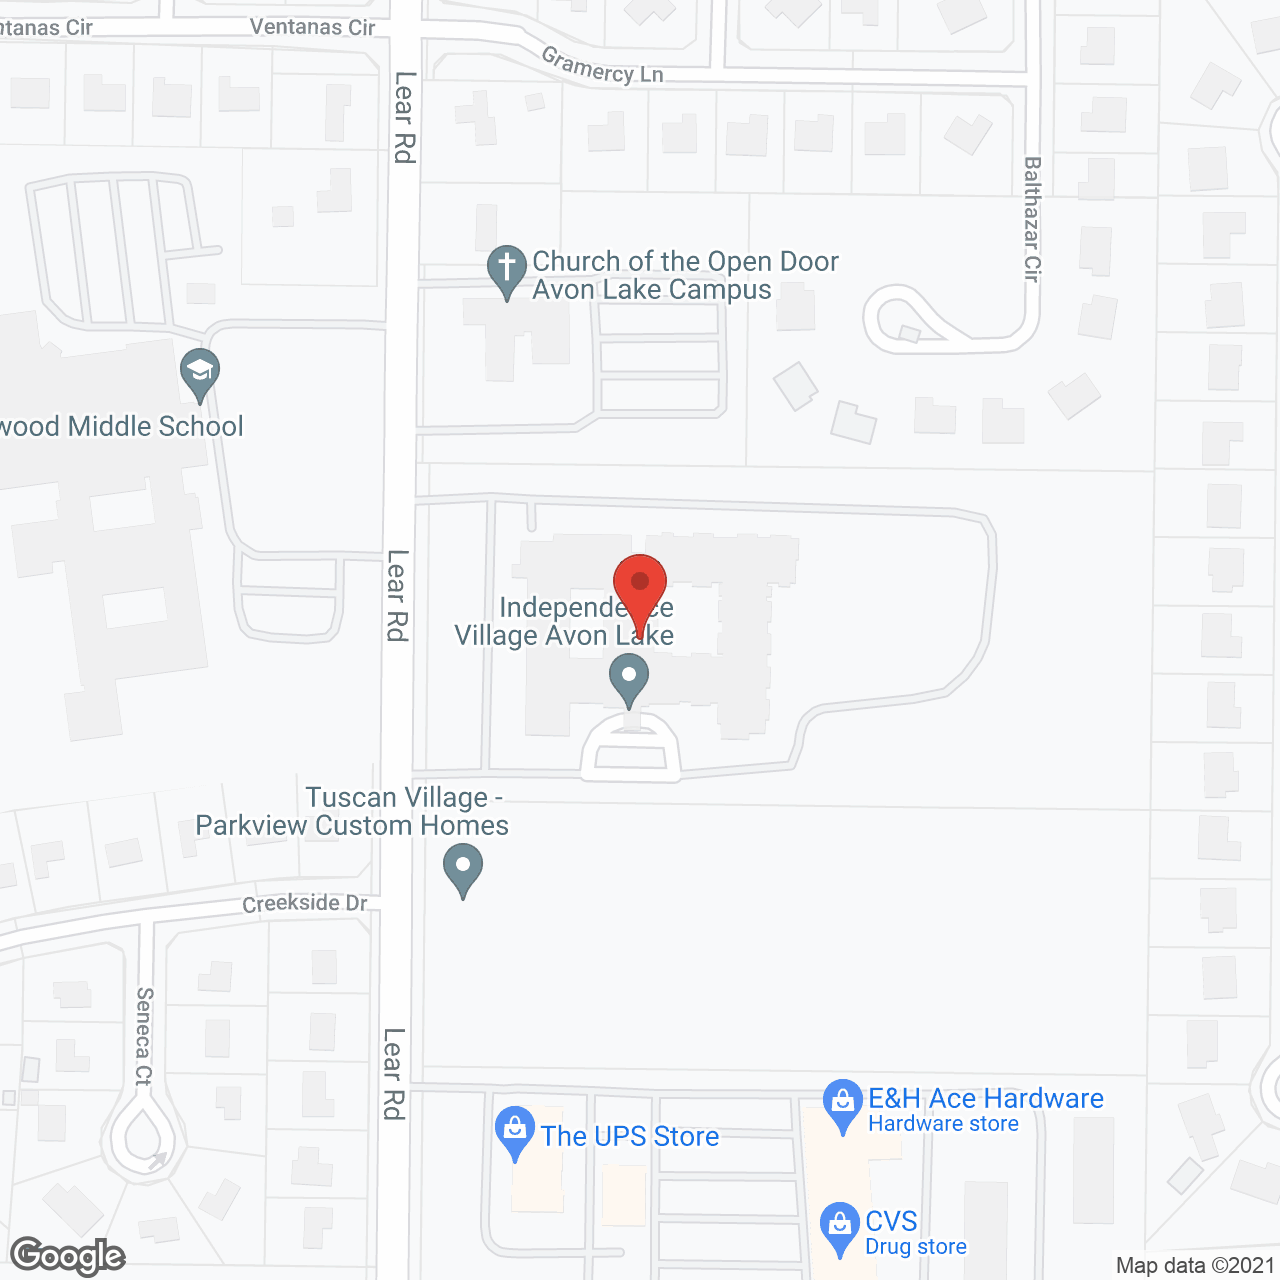 Independence Village of Avon Lake in google map